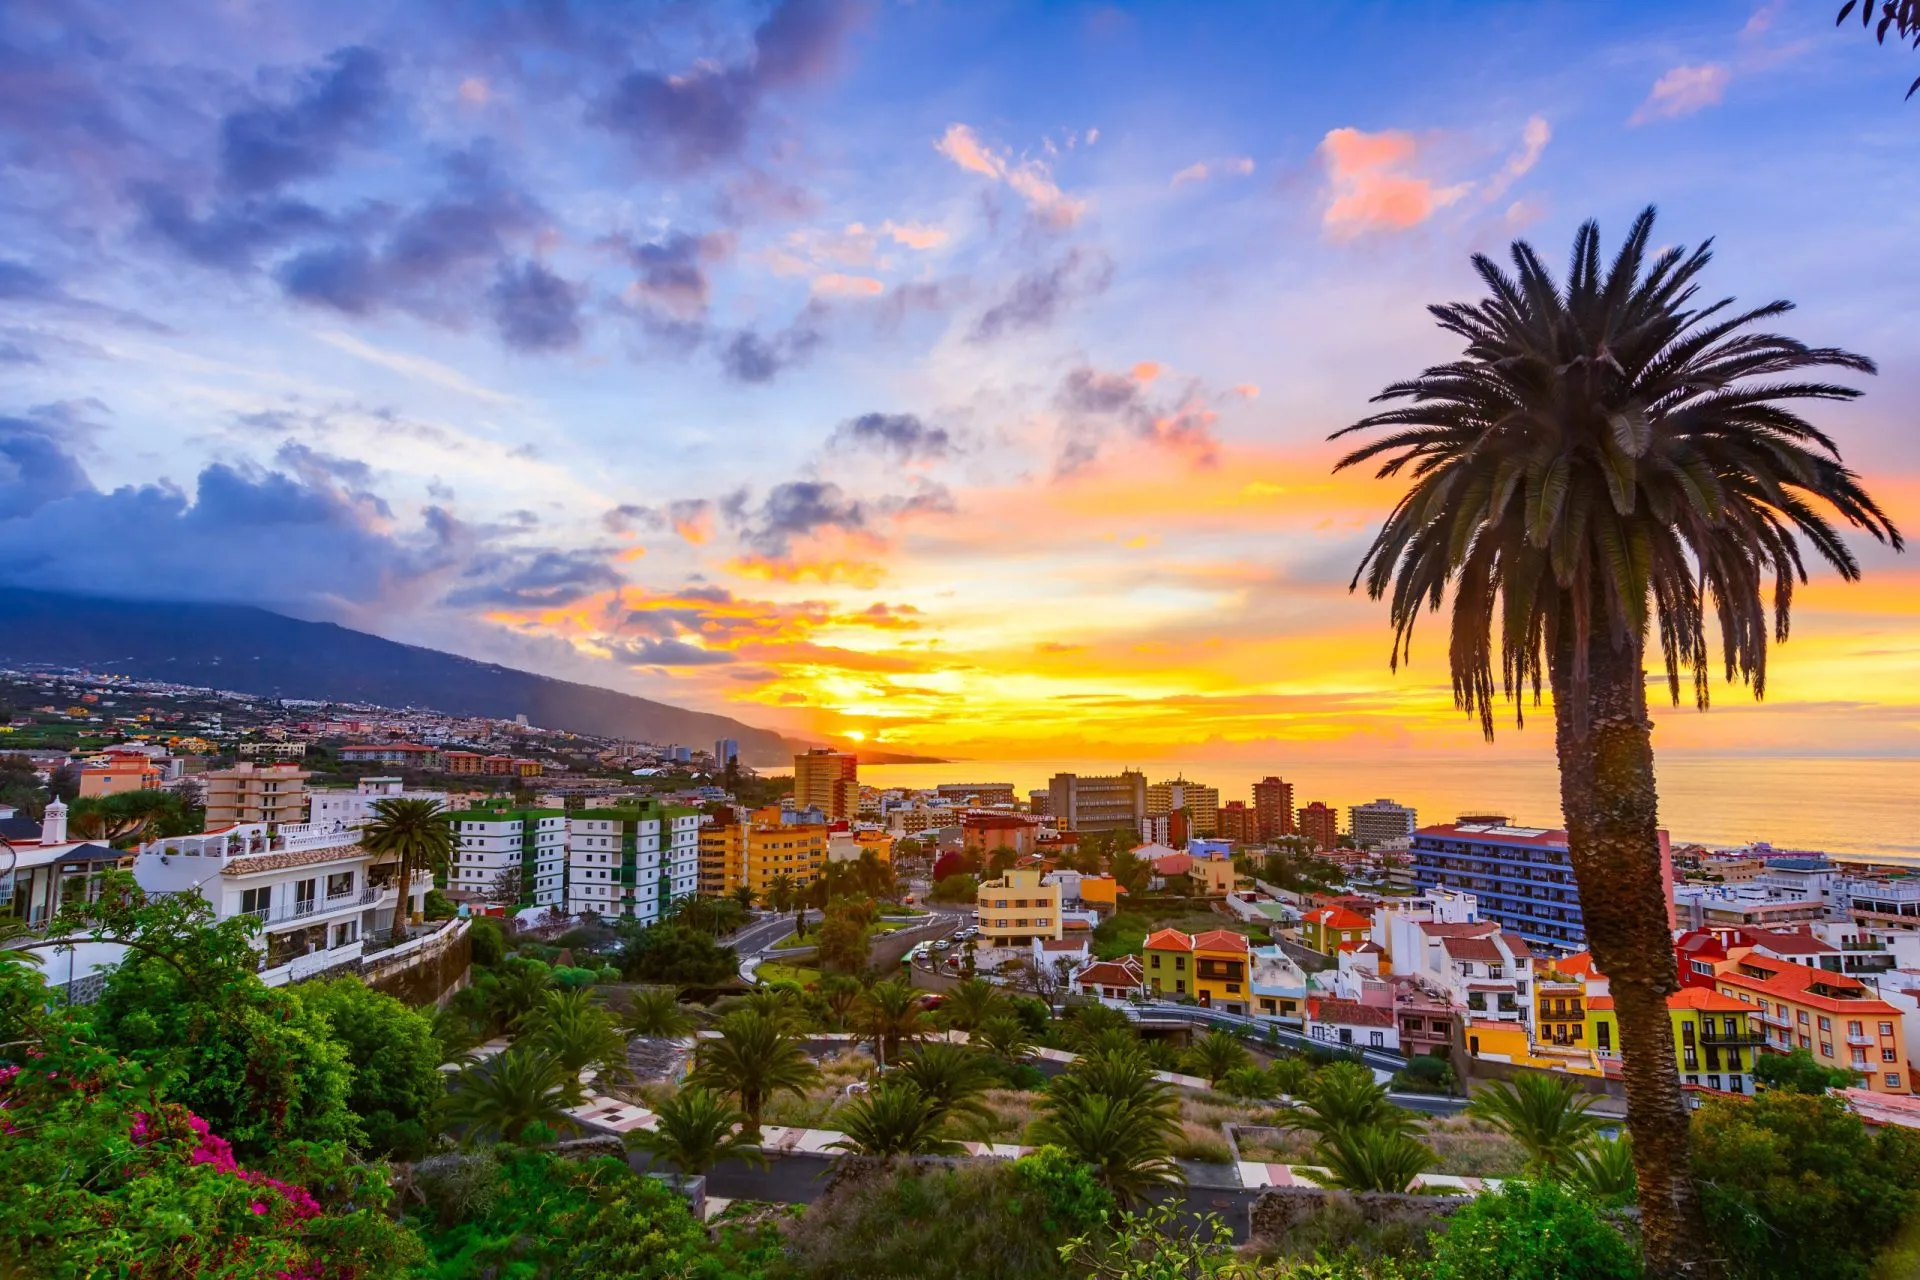 Puerto de la Cruz, Tenerife, De Kanariske Øer, Spanien: Scenisk udsigt over byen ved solnedgangstid